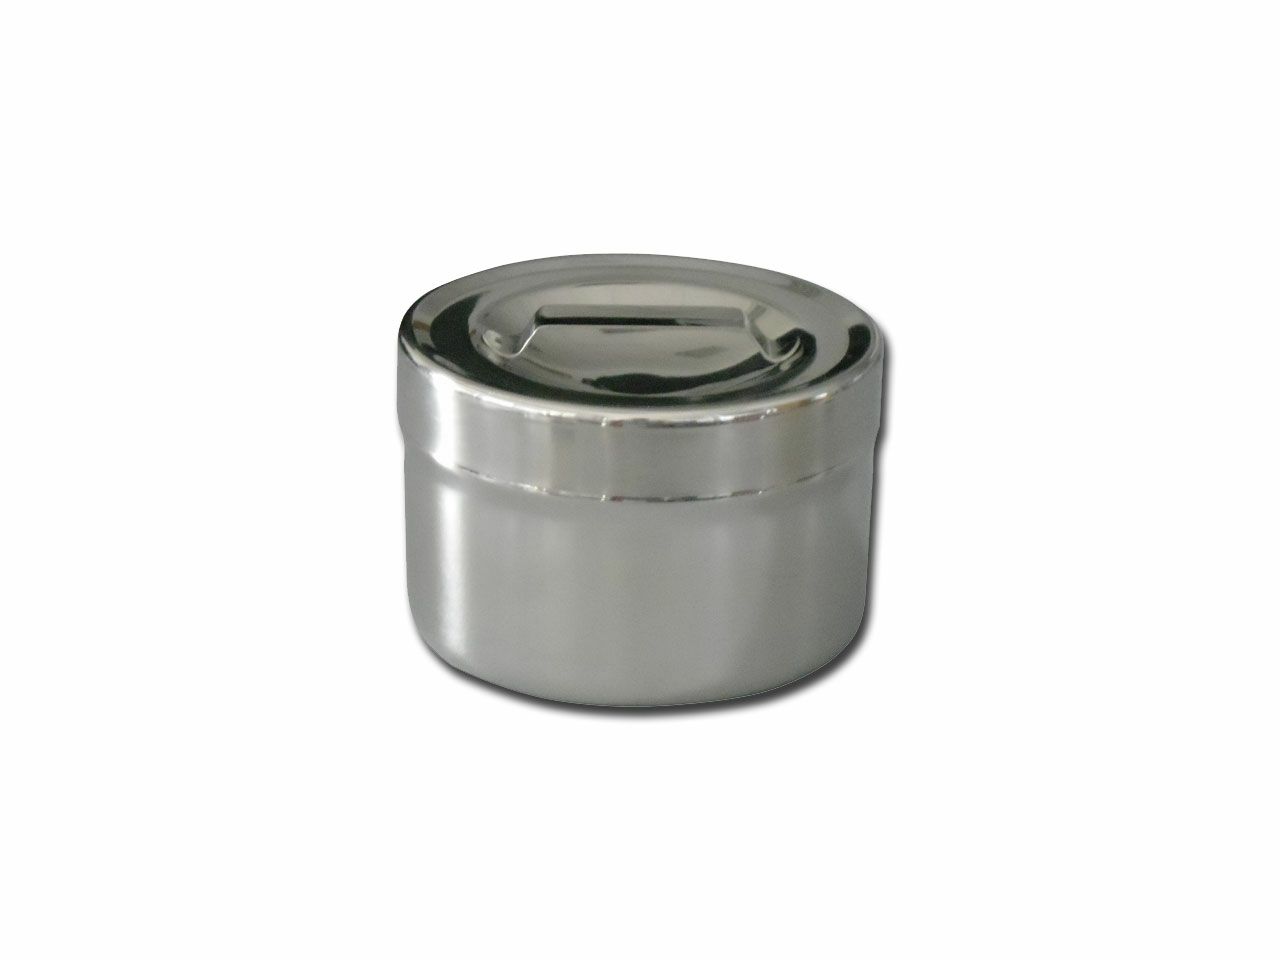 s-s-dressing-jar-05-l-with-lid-diam106x66-mm-26623_1.jpg